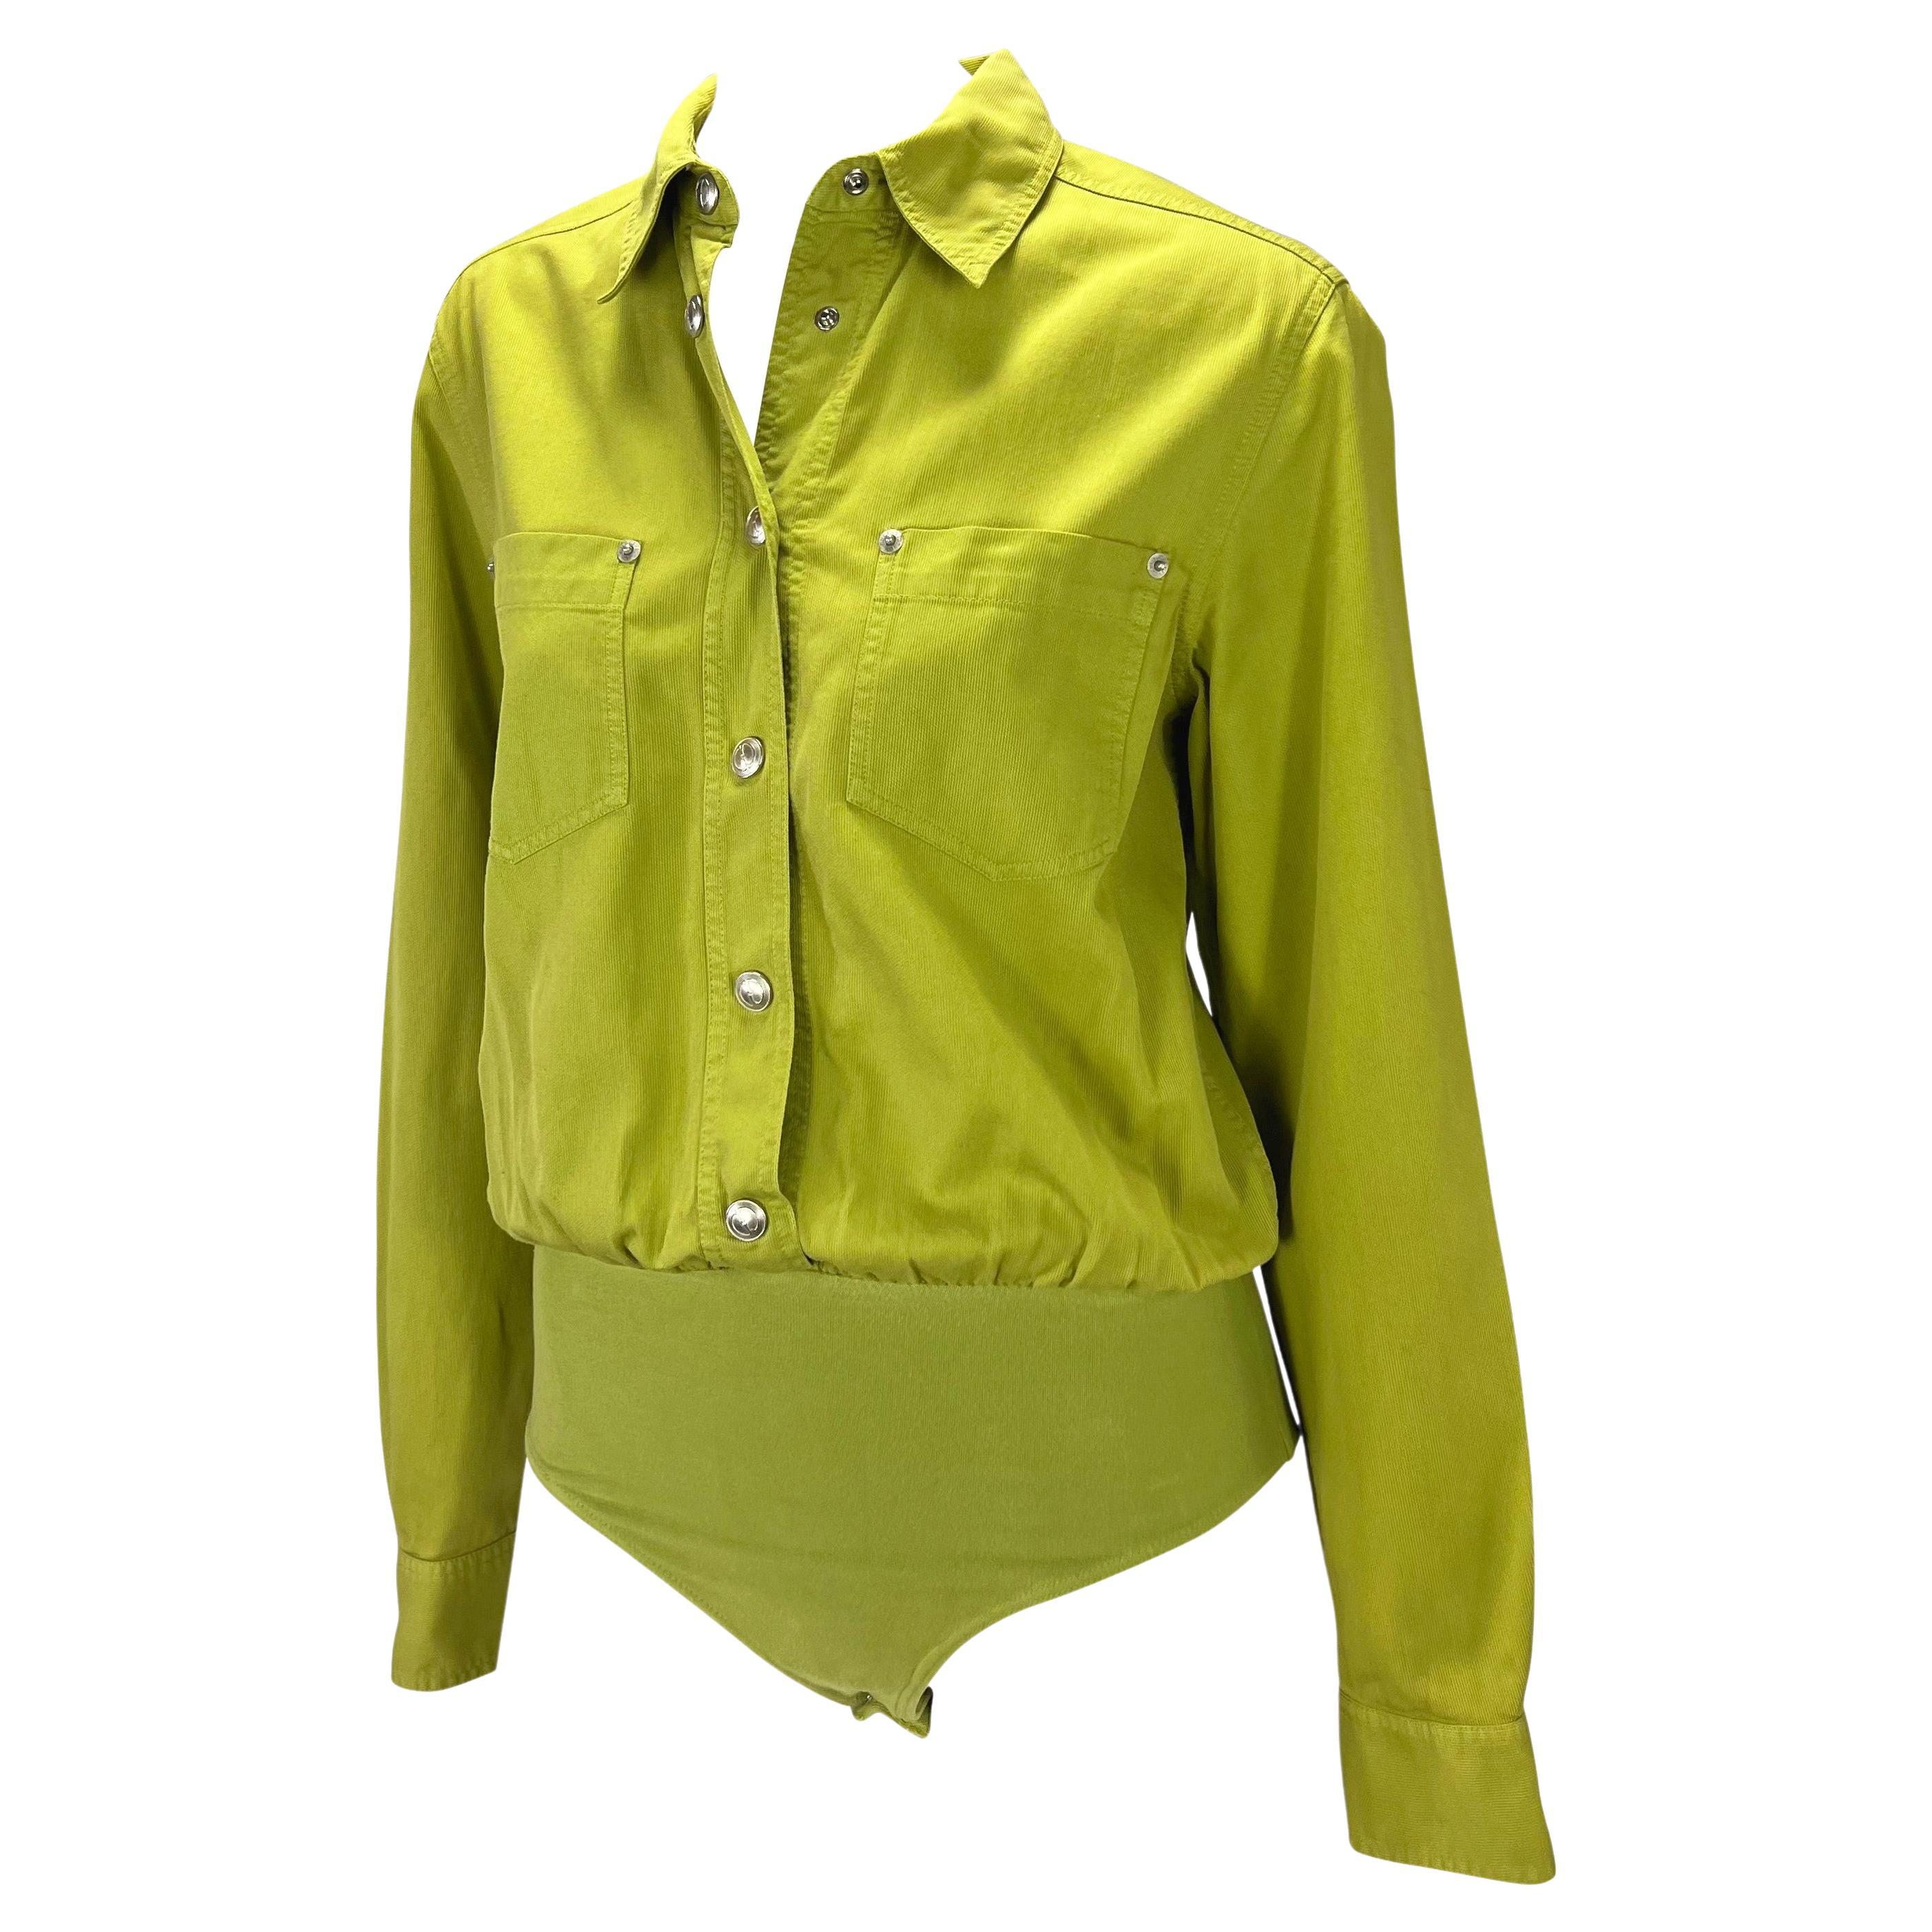 Wir präsentieren ein chartreuse Gucci-Trikotoberteil, entworfen von Tom Ford. Dieses Oberteil aus der Frühjahr/Sommer-Kollektion 1995 ist ein klassisches Button-Down-Hemd mit zwei Taschen an der Brust und silbernen GG-Knopfverschlüssen. Das Oberteil